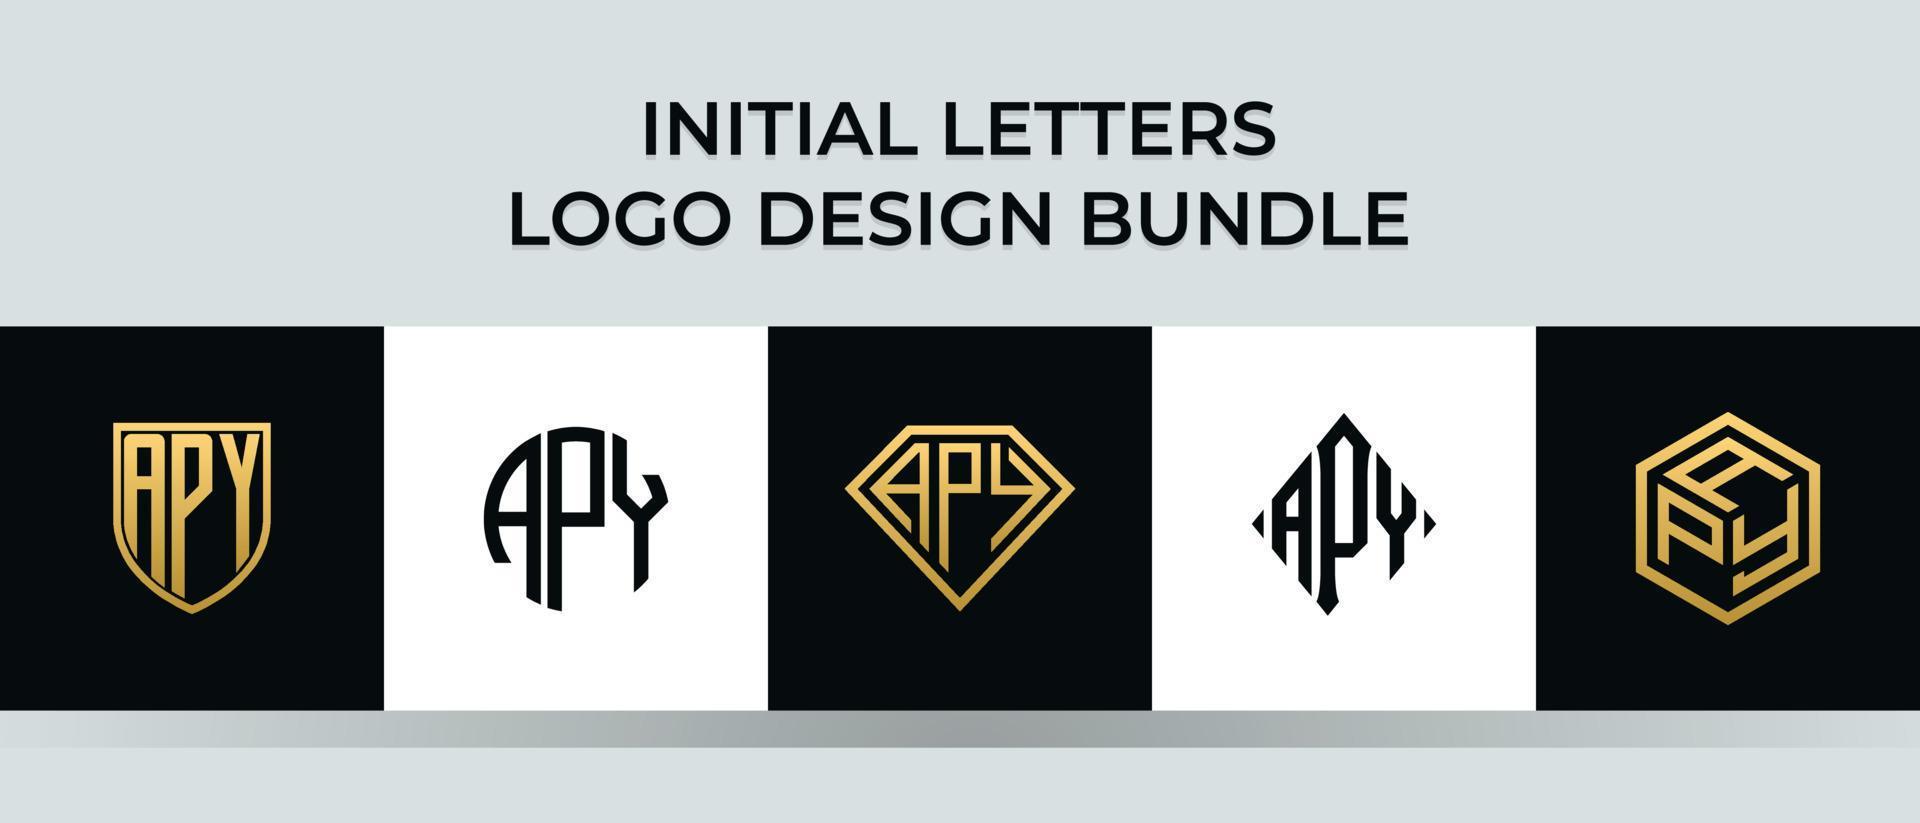 letras iniciales apy logo diseños paquete vector